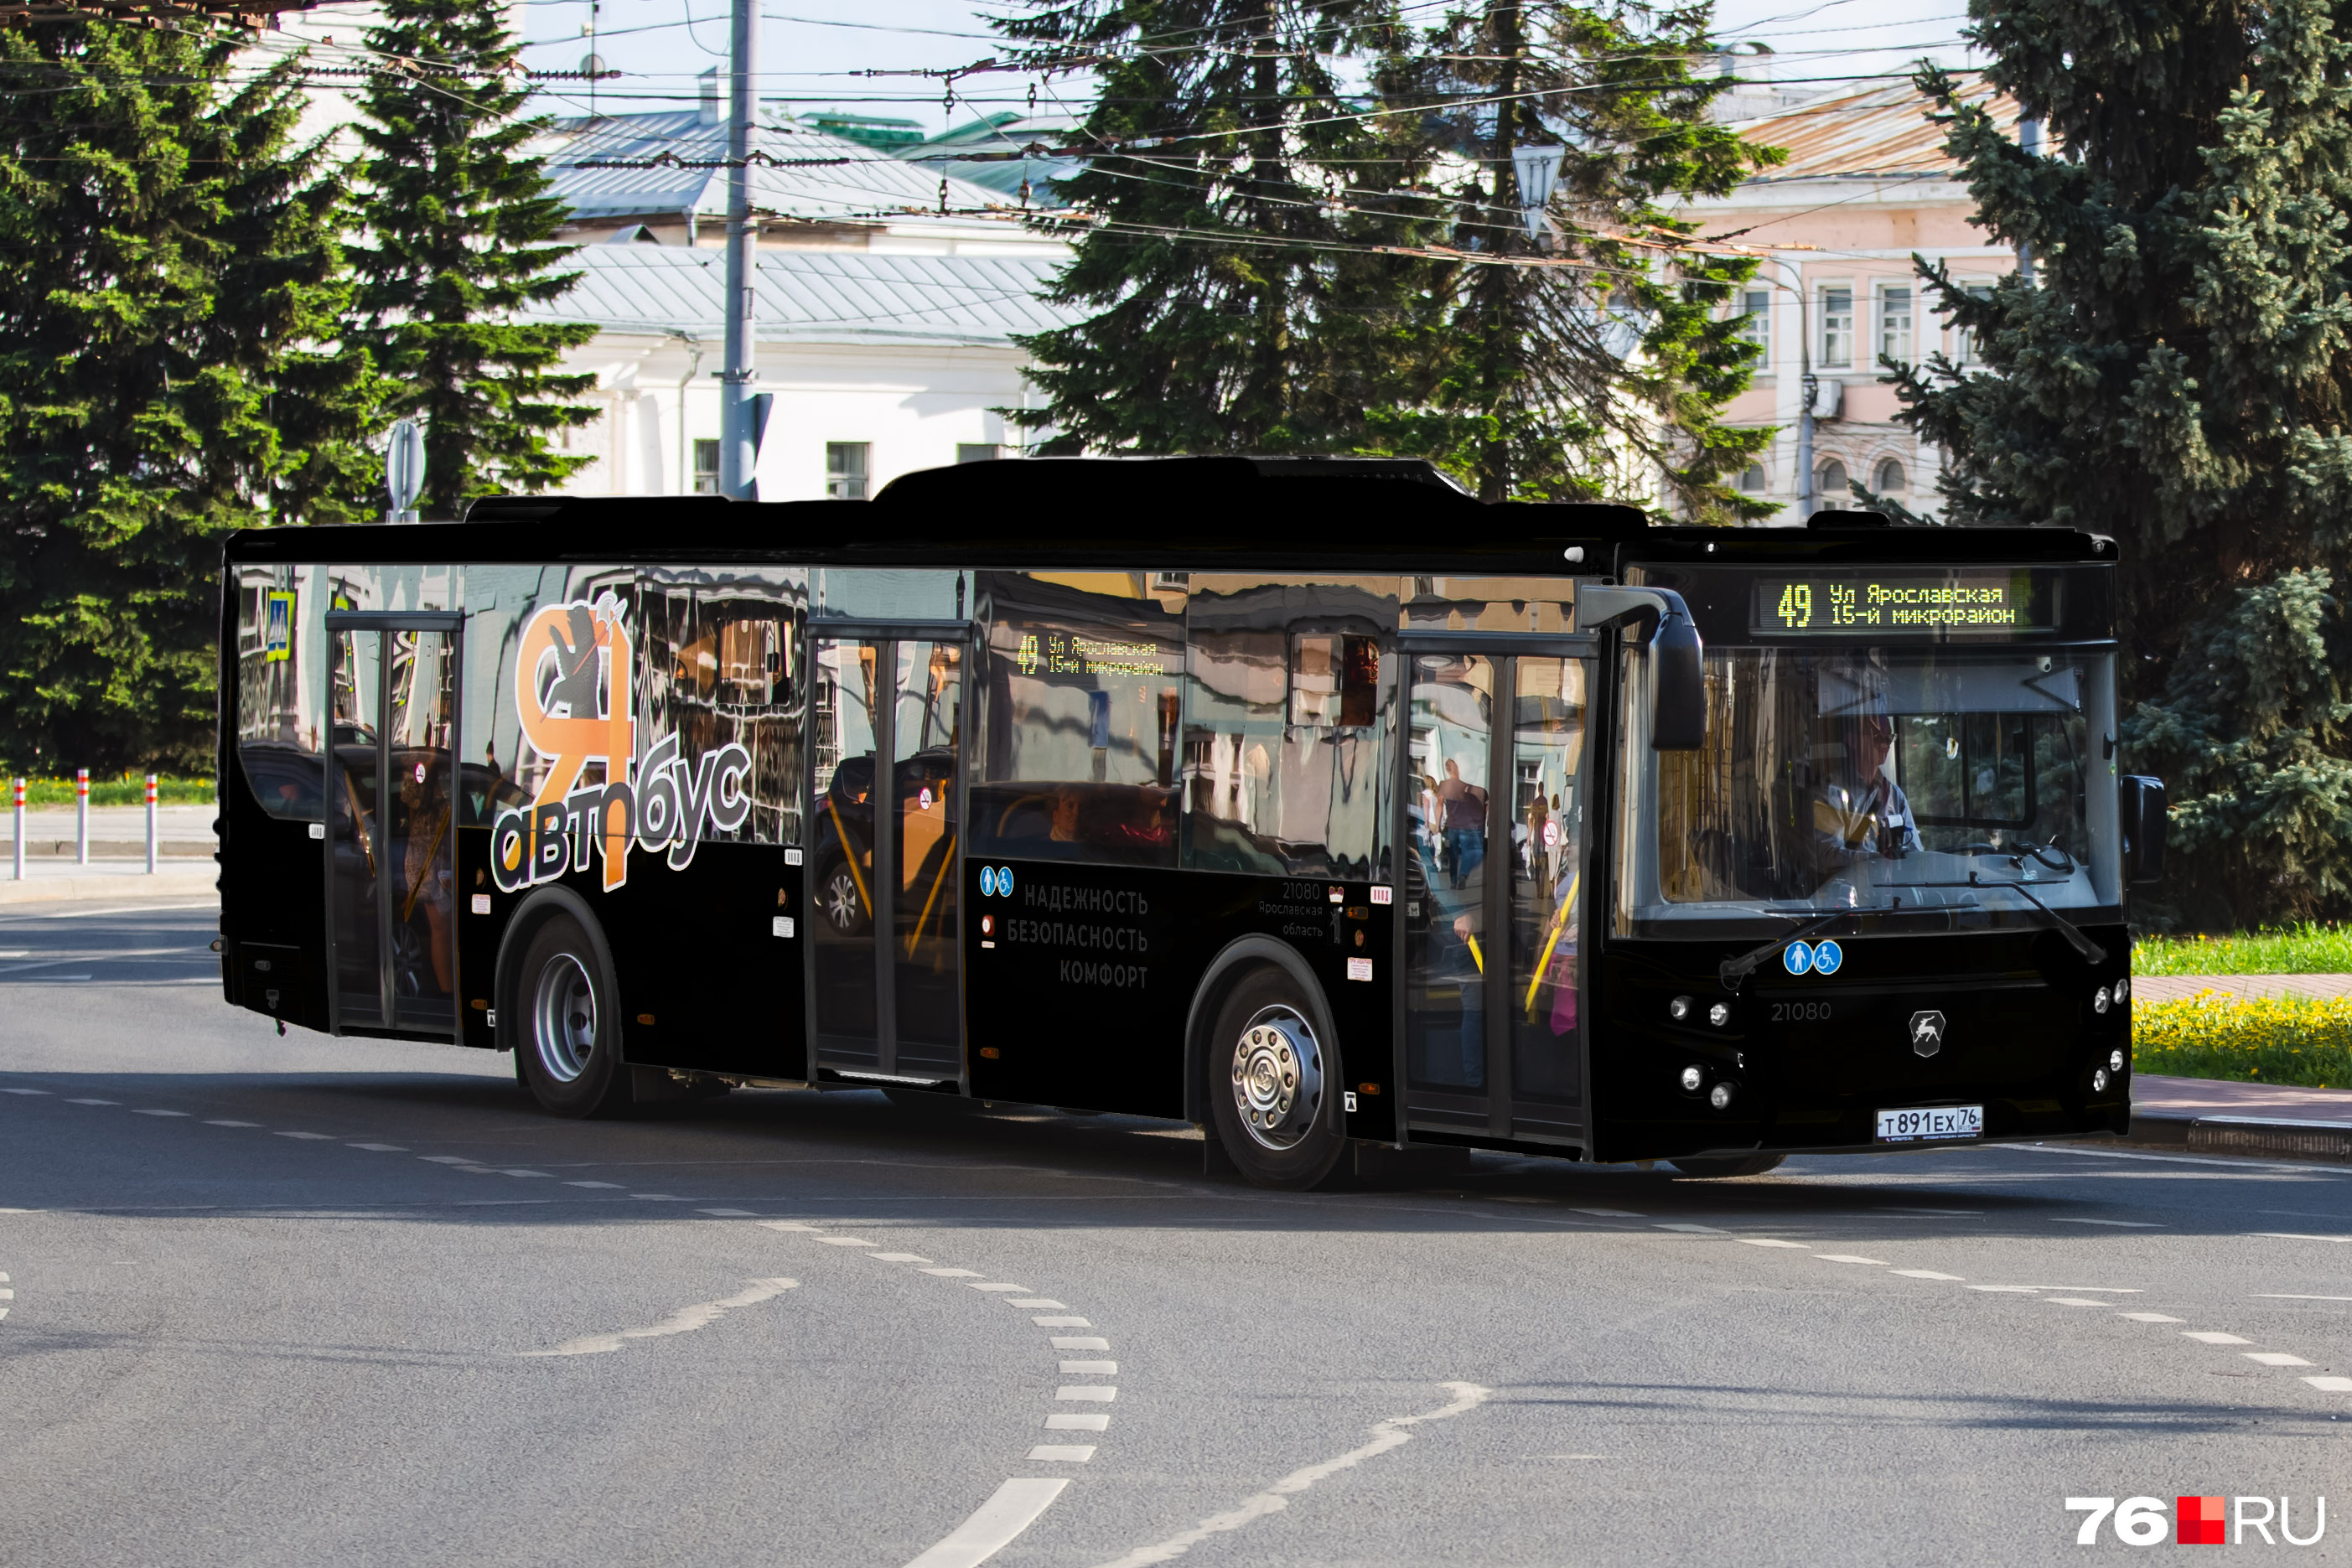 Черные автобусы выглядят так, словно приехали сниматься в клипе рэп-исполнителя